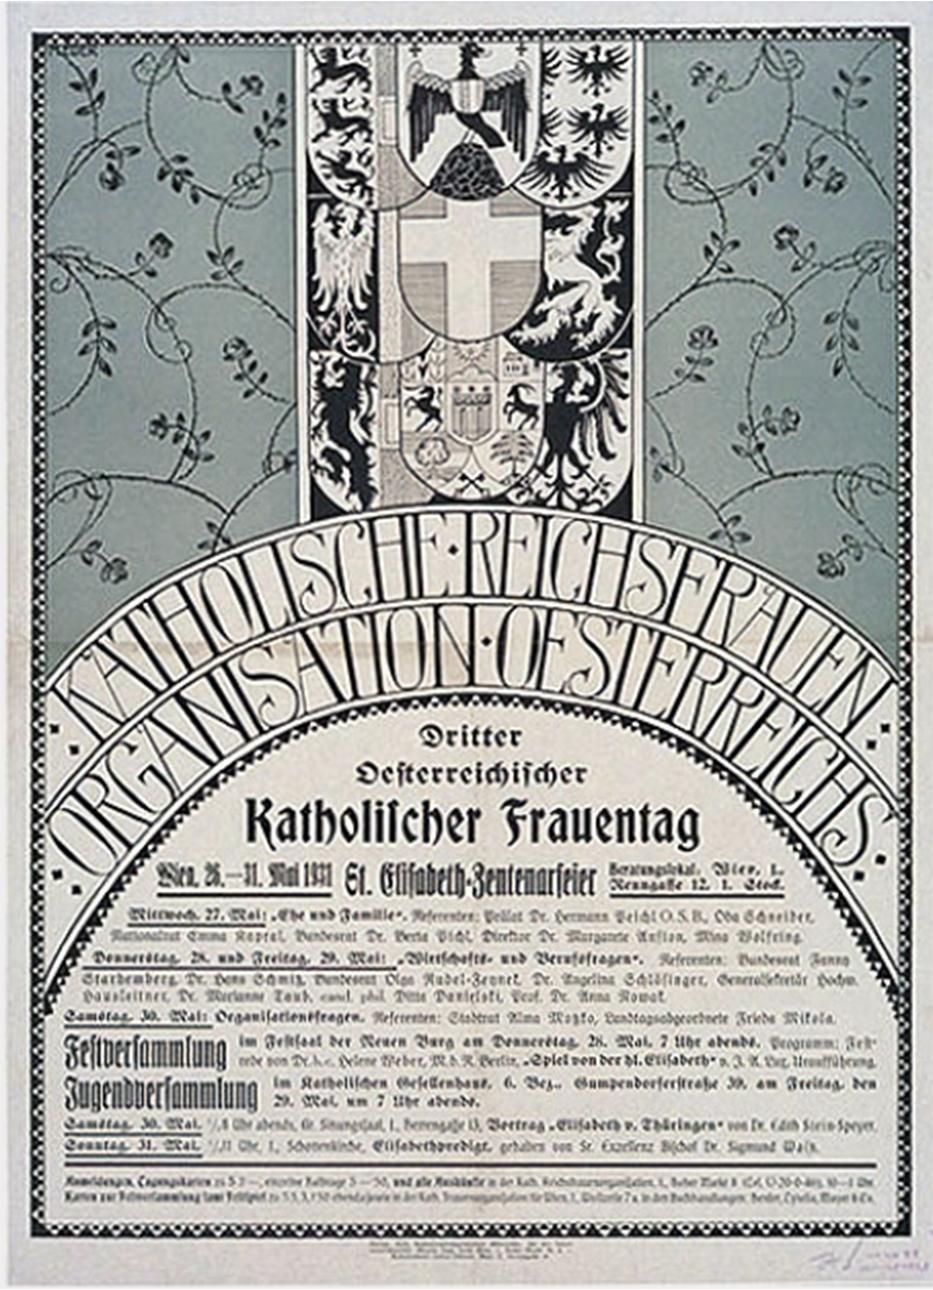 Plakat mit Ankündigung des Katholischen Frauentags 1931